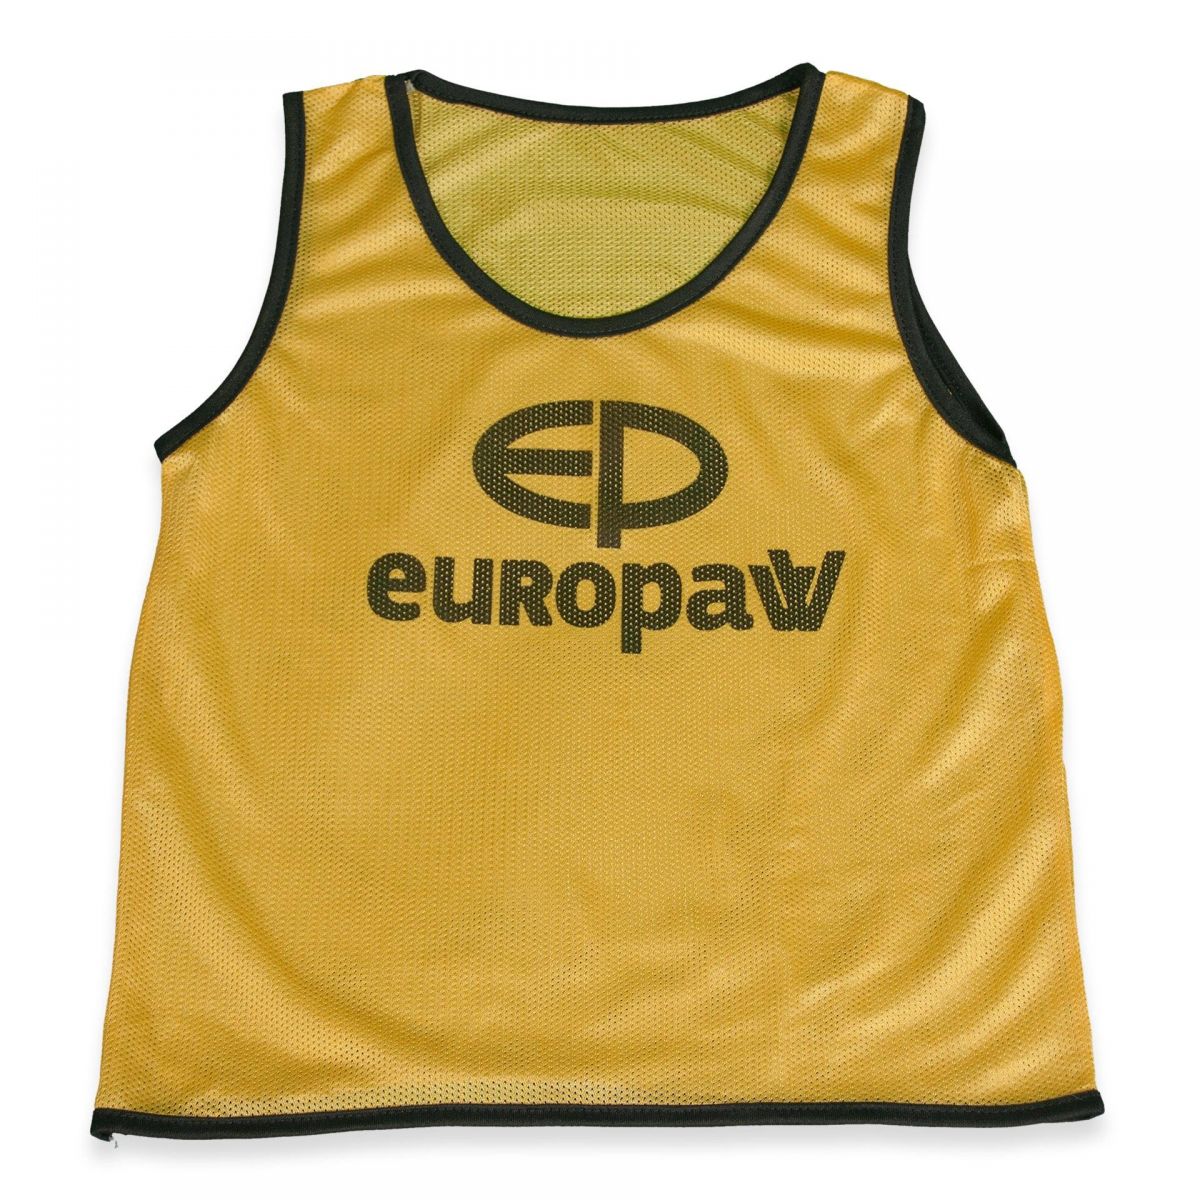 Манишка Europaw logo детская желтая